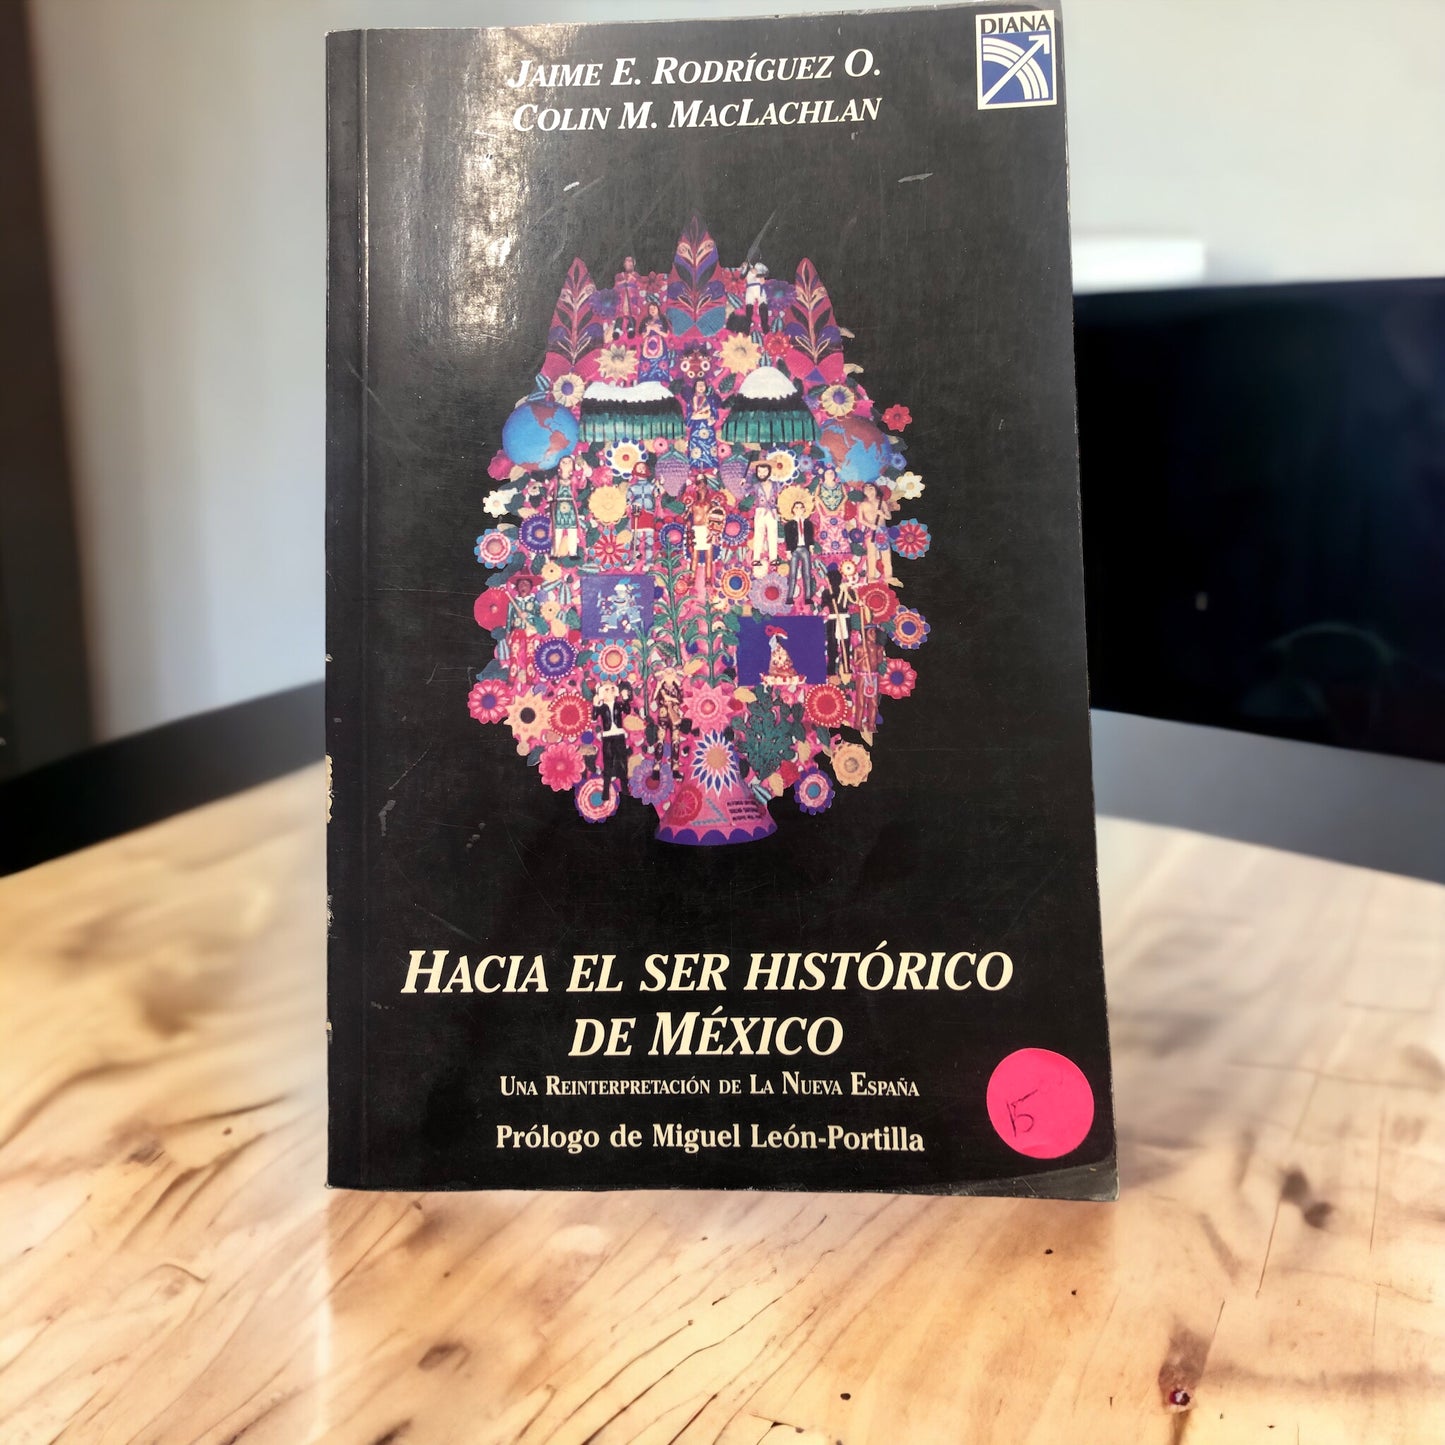 Hacia El Ser Histórico de México por Jaime E. Rodriguez O y Colin M. MacLachlan (Pasta blanda)